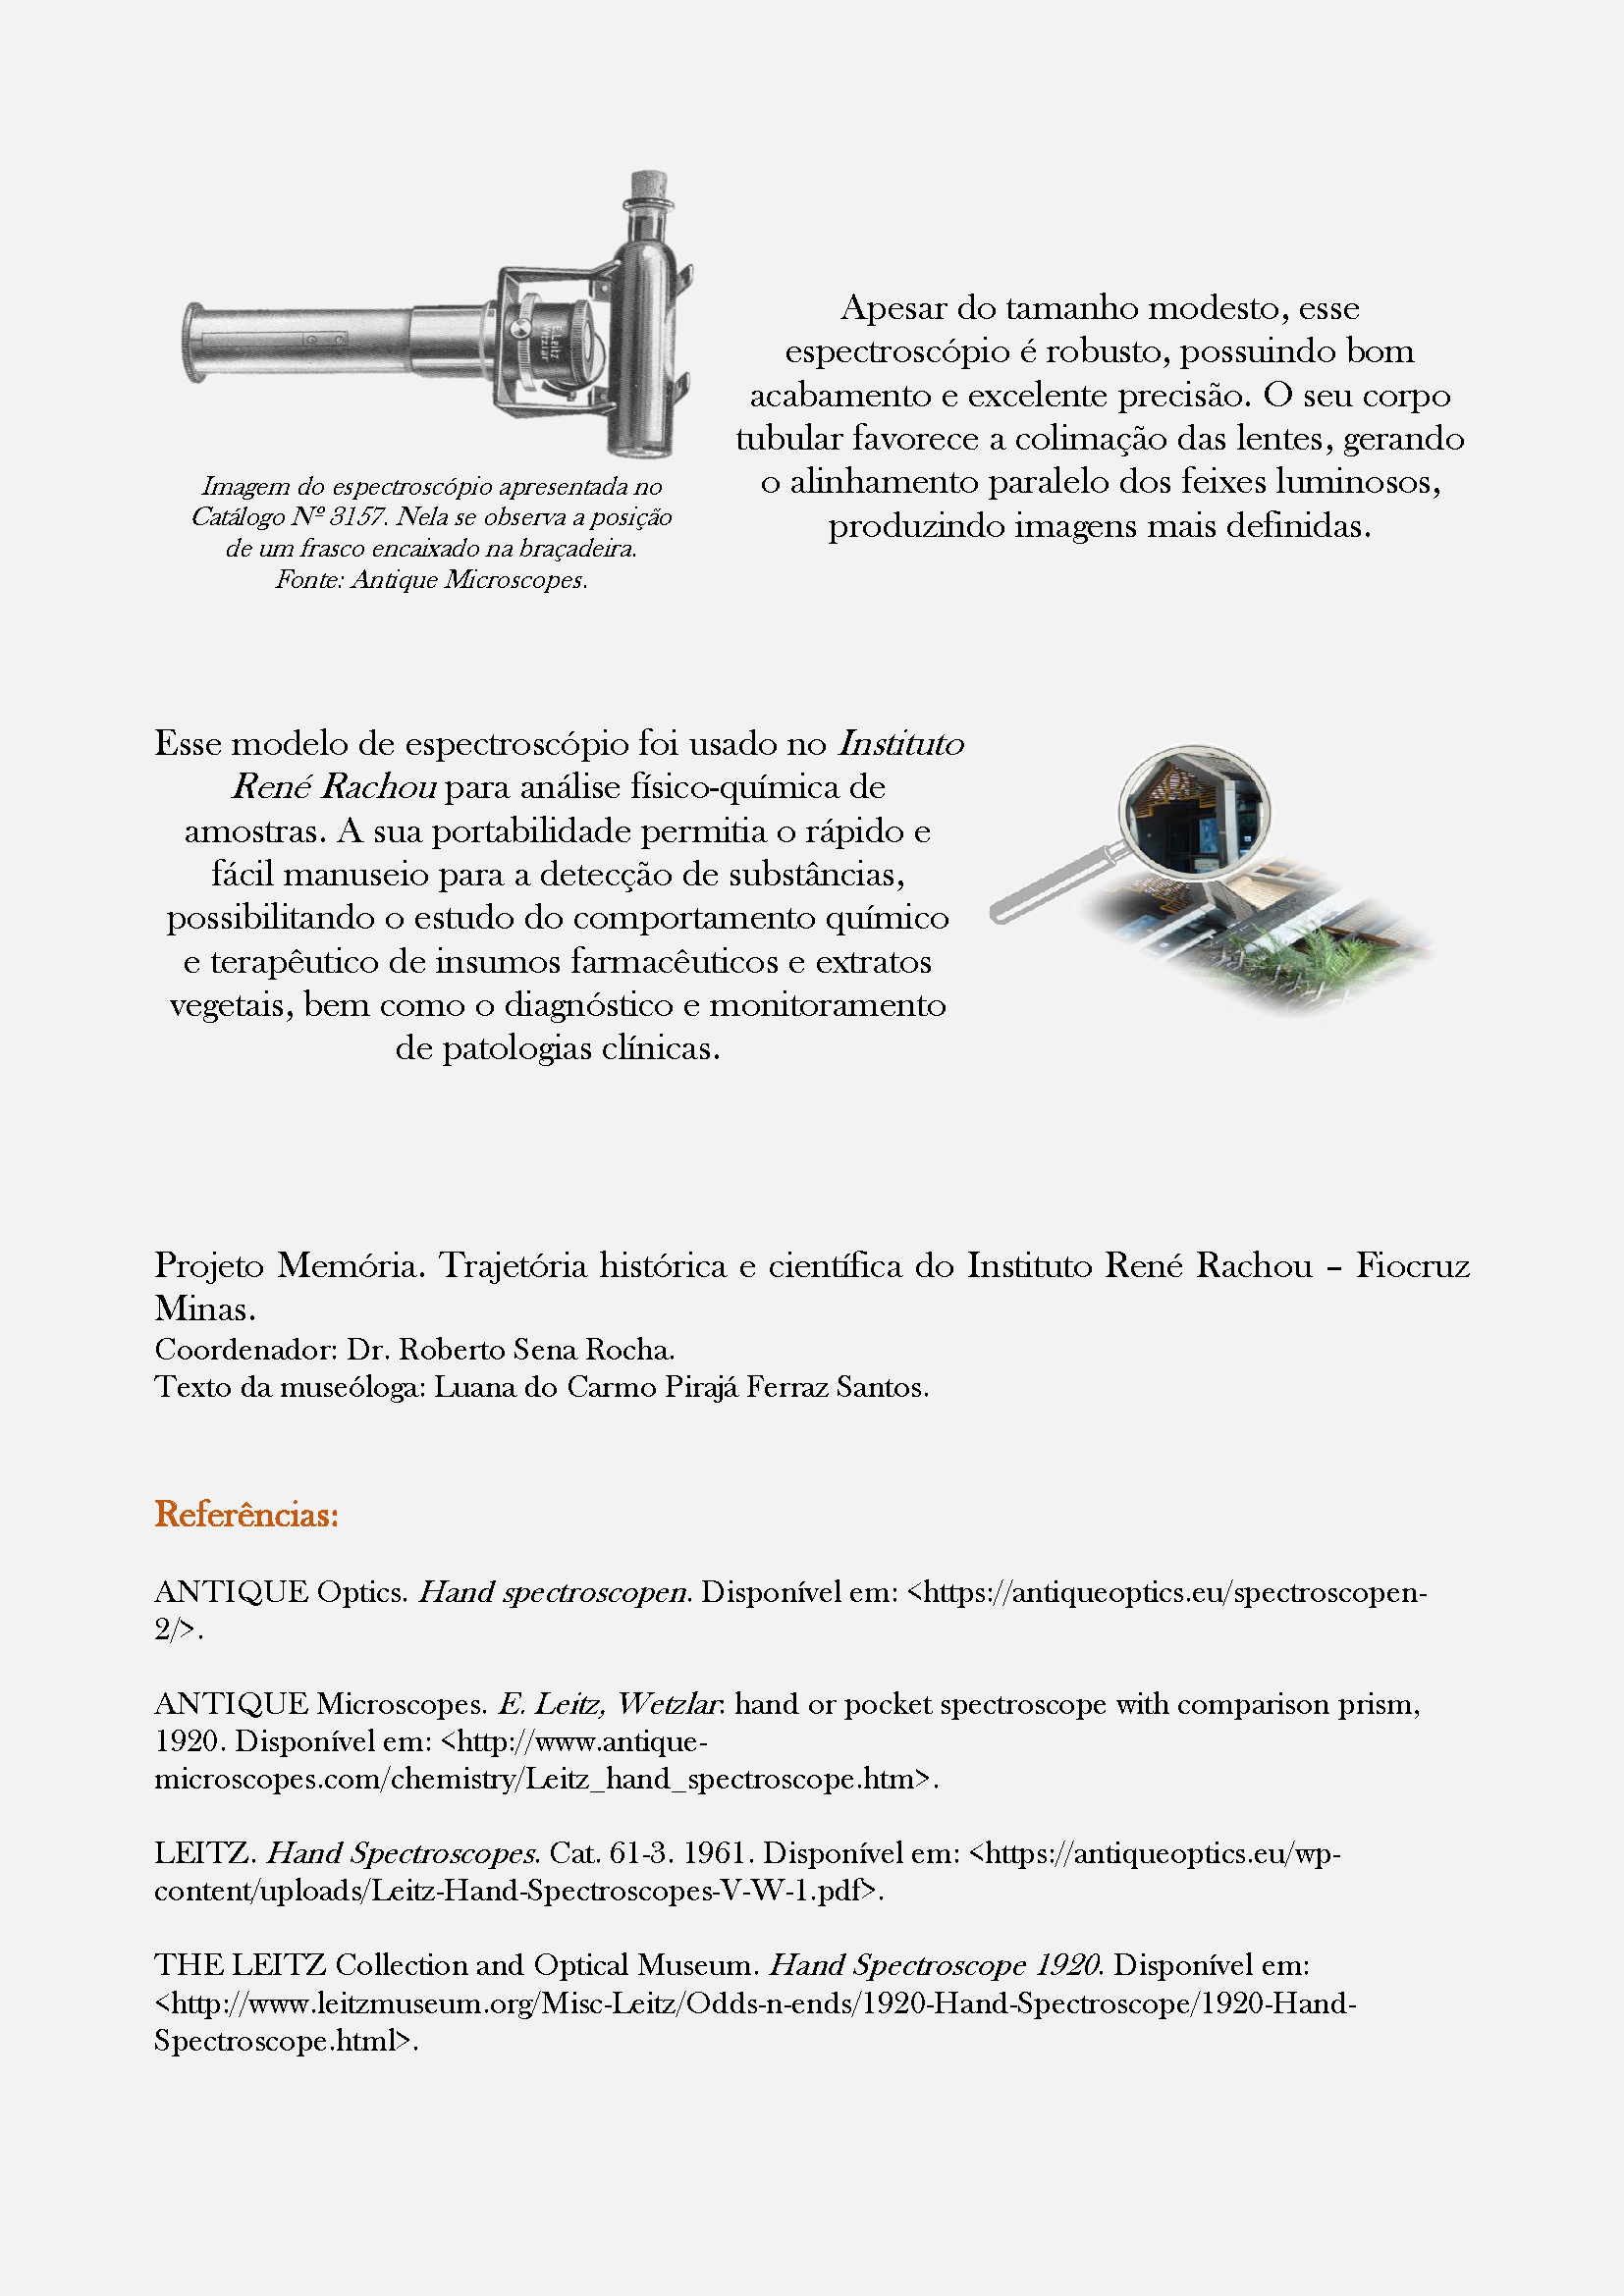 II.1 - Handspektroskop W - Espectroscópio portátil (2019.84) - Final (1) - Copia_Página_2